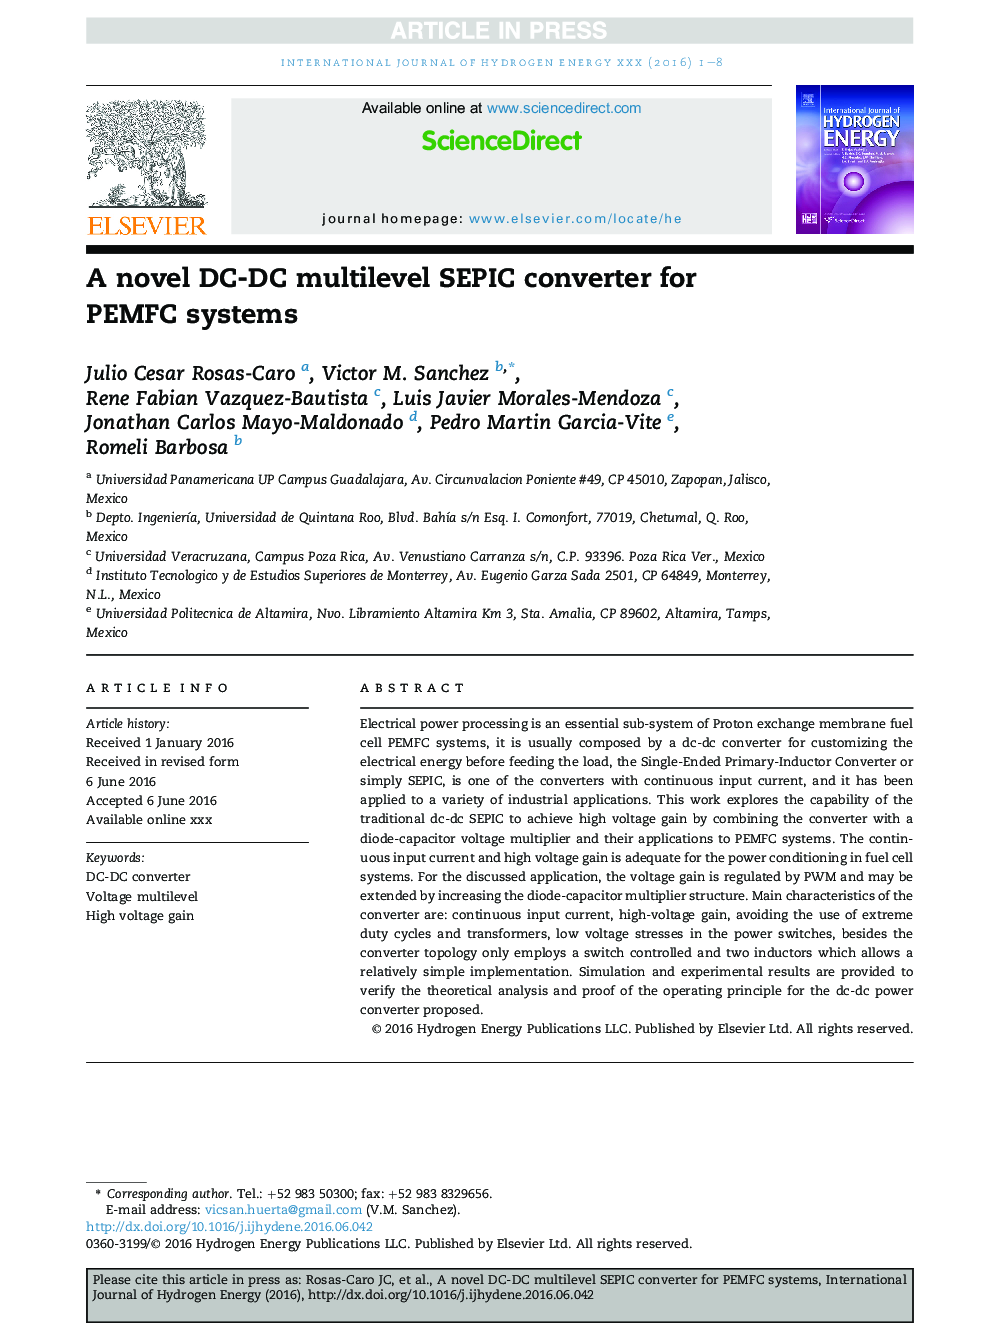 A novel DC-DC multilevel SEPIC converter for PEMFC systems